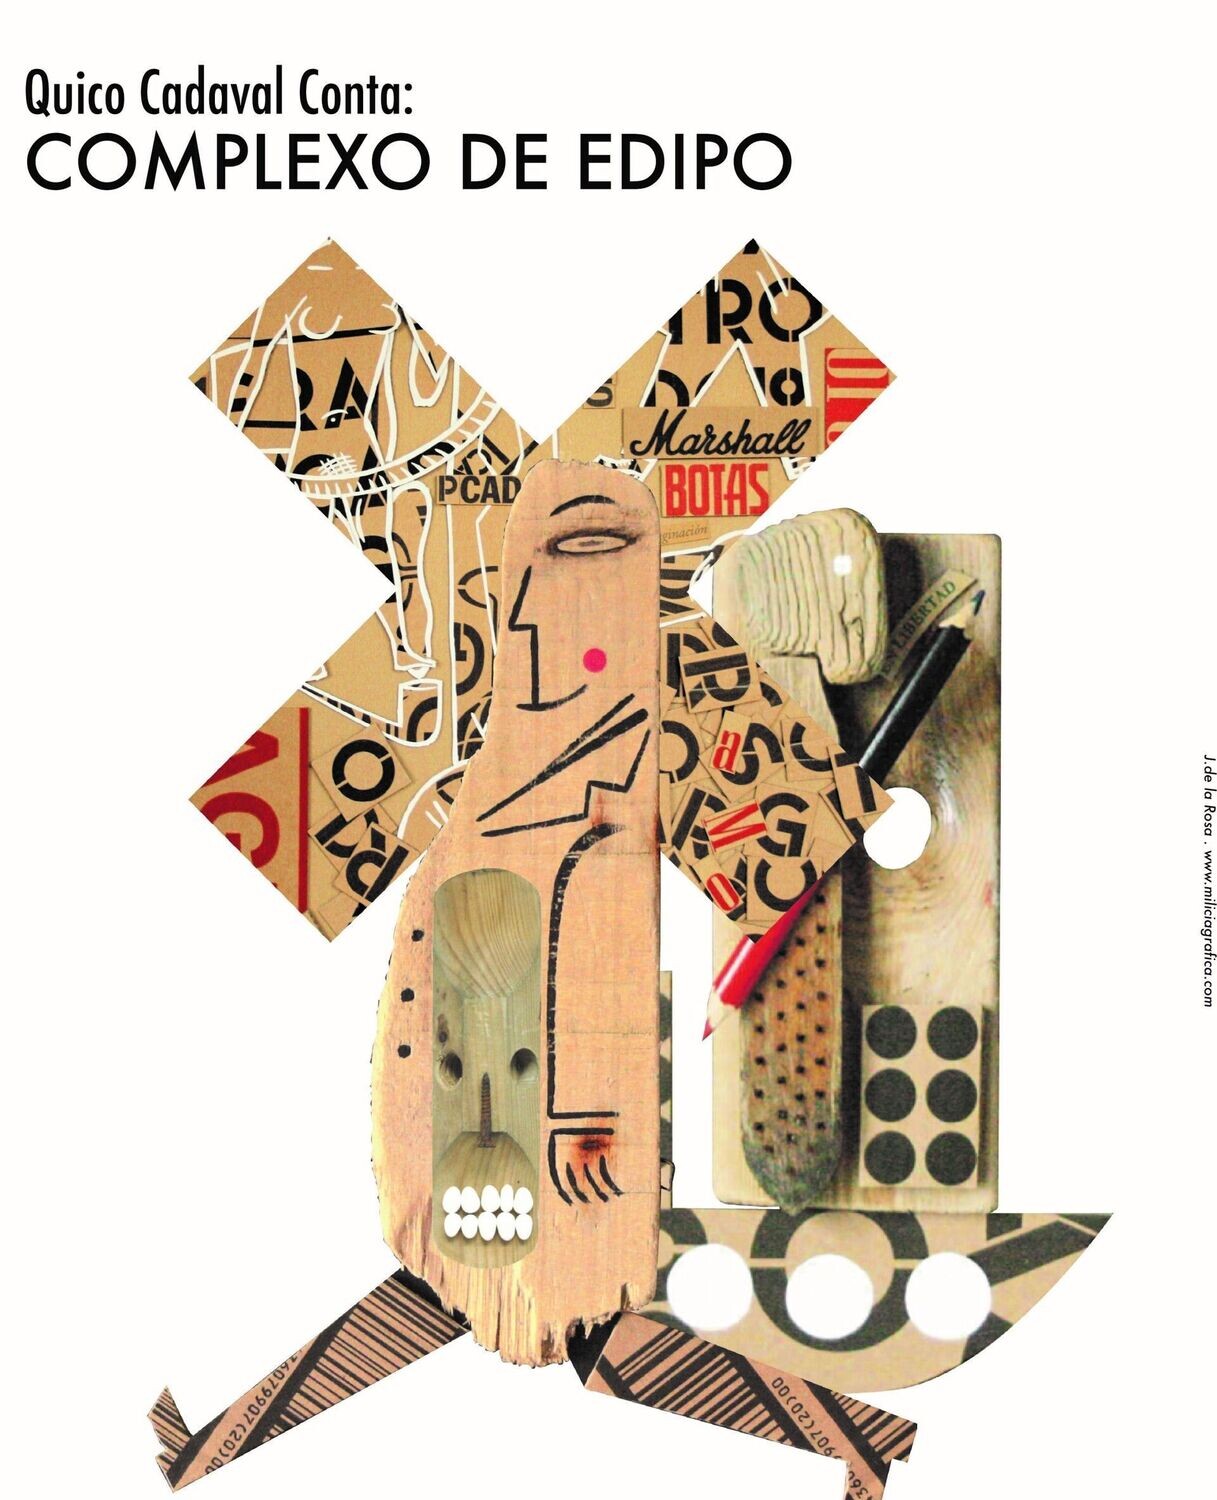 CADAVAL CONTA... COMPLEXO DE EDIPO (2020)